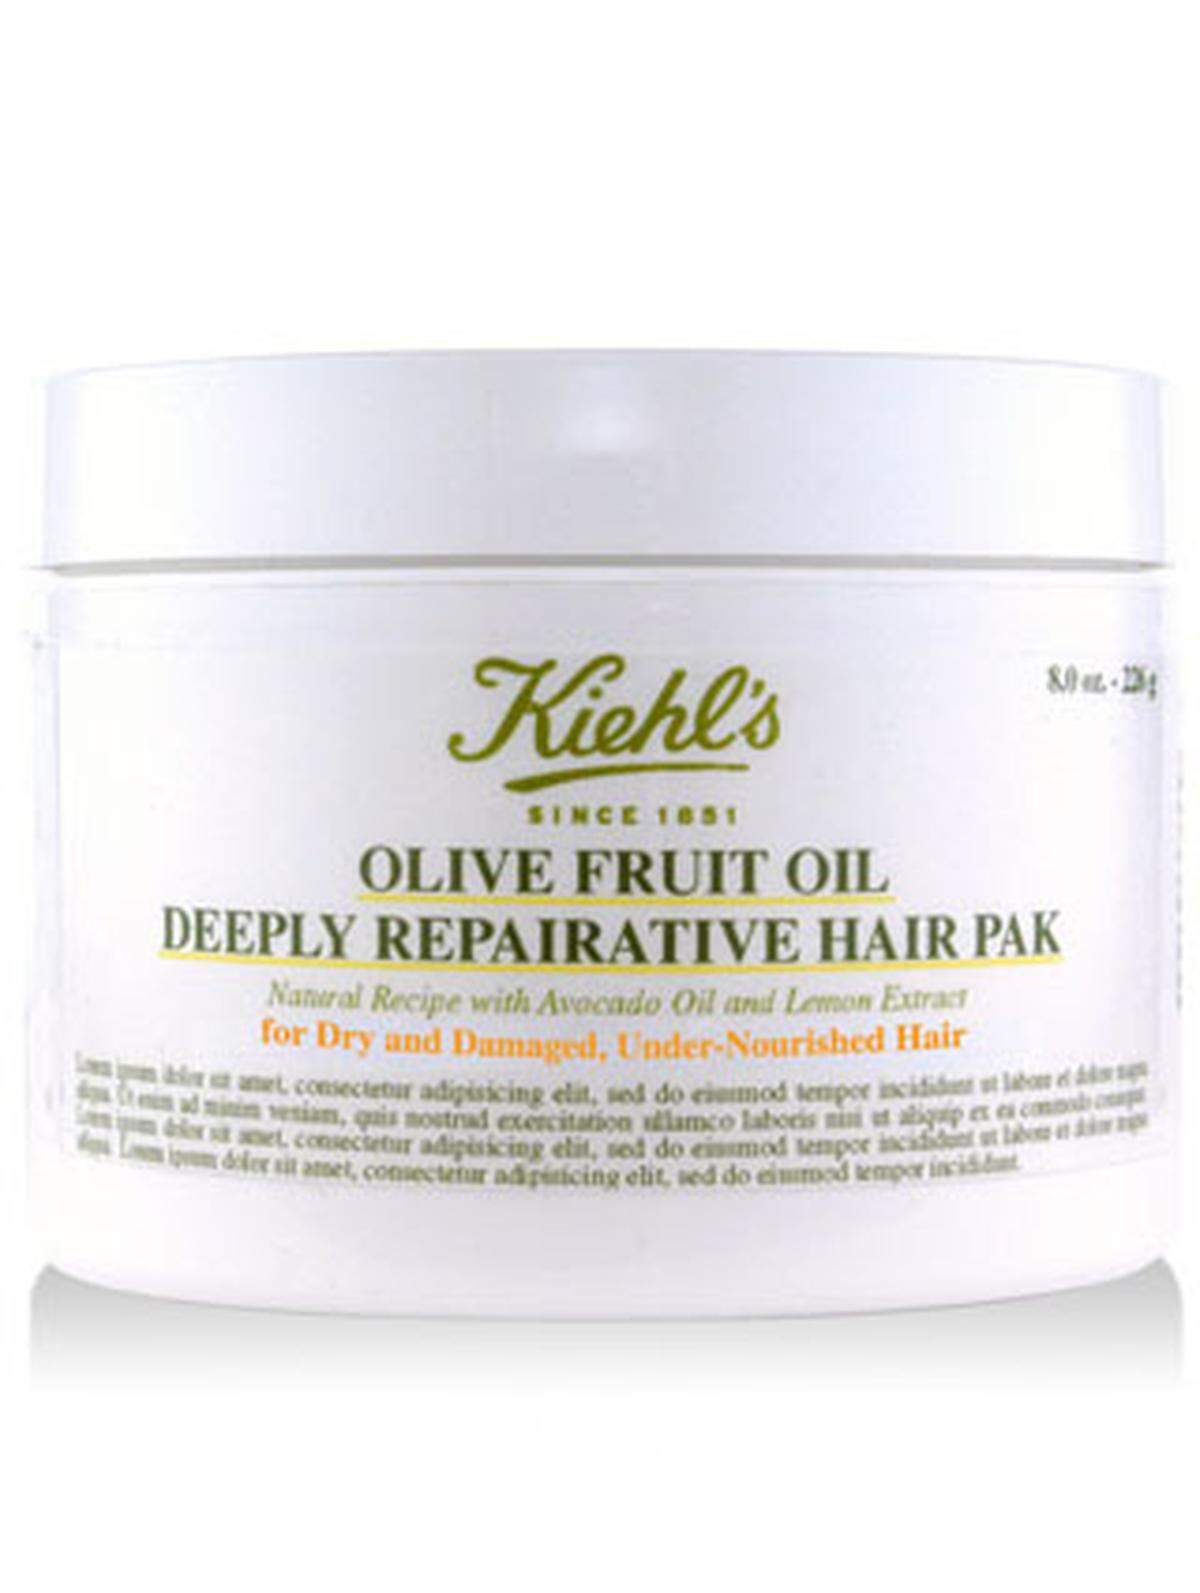 Olive fruit oil deeply repairative hair pack von Kiehl’s since1851 ist eine leichte Pflegespülung, die intensive Feuchtigkeit bringt, 250&#8201;ml um 33,50 Euro.